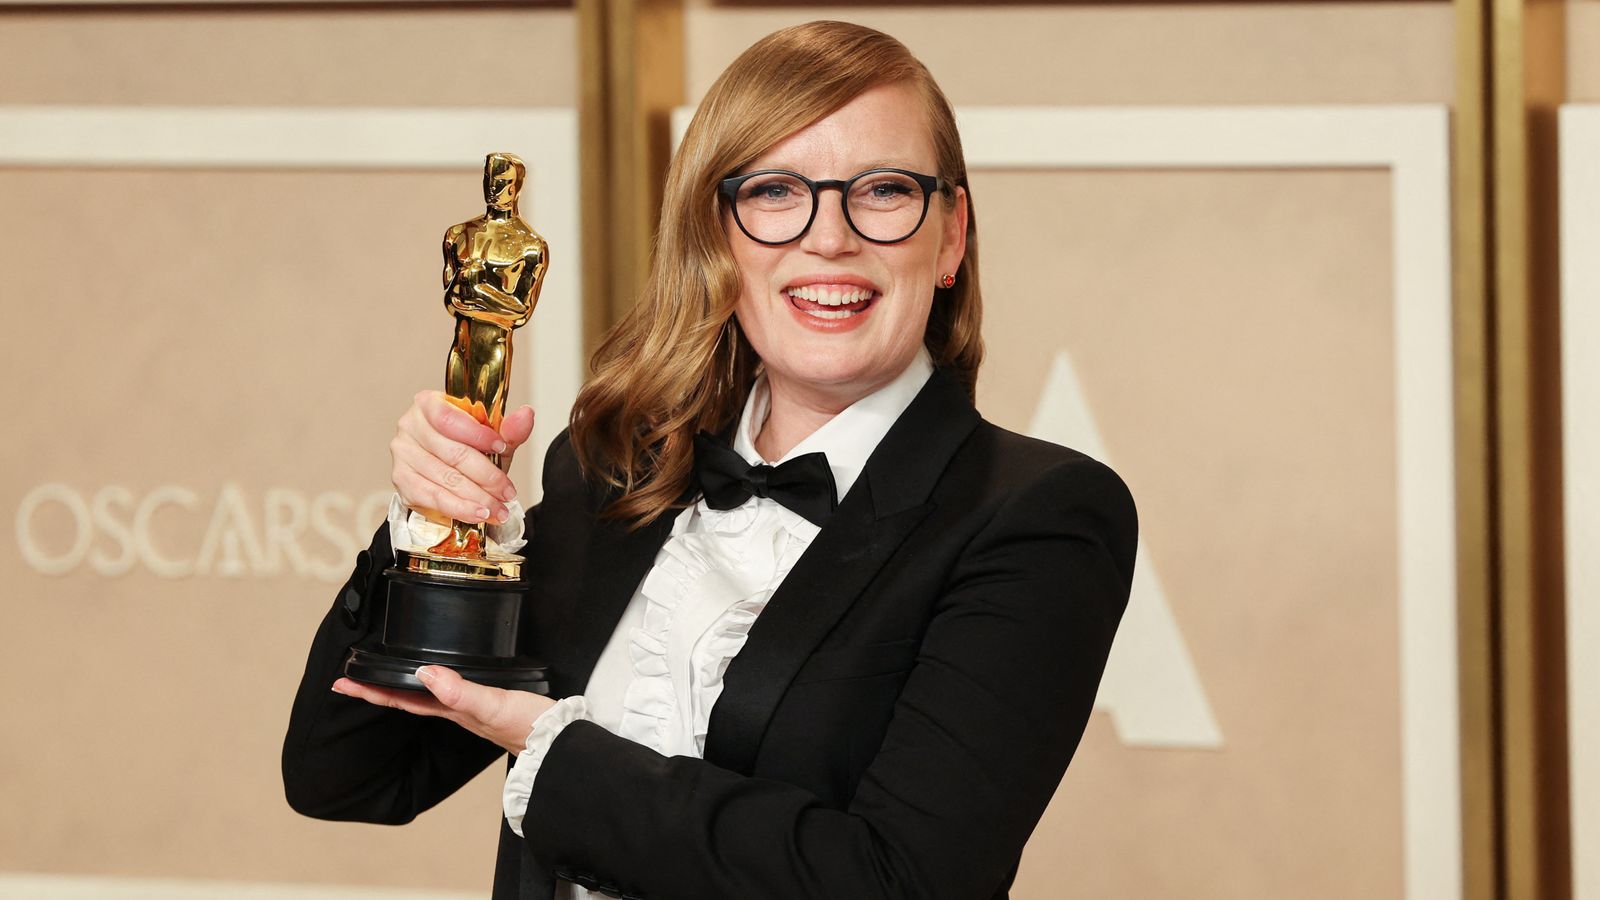 Sarah Polley, lauréate d’un Oscar, a reçu l’ordre de rendre son prix lors d’une farce du poisson d’avril |  Actualités Ents & Arts